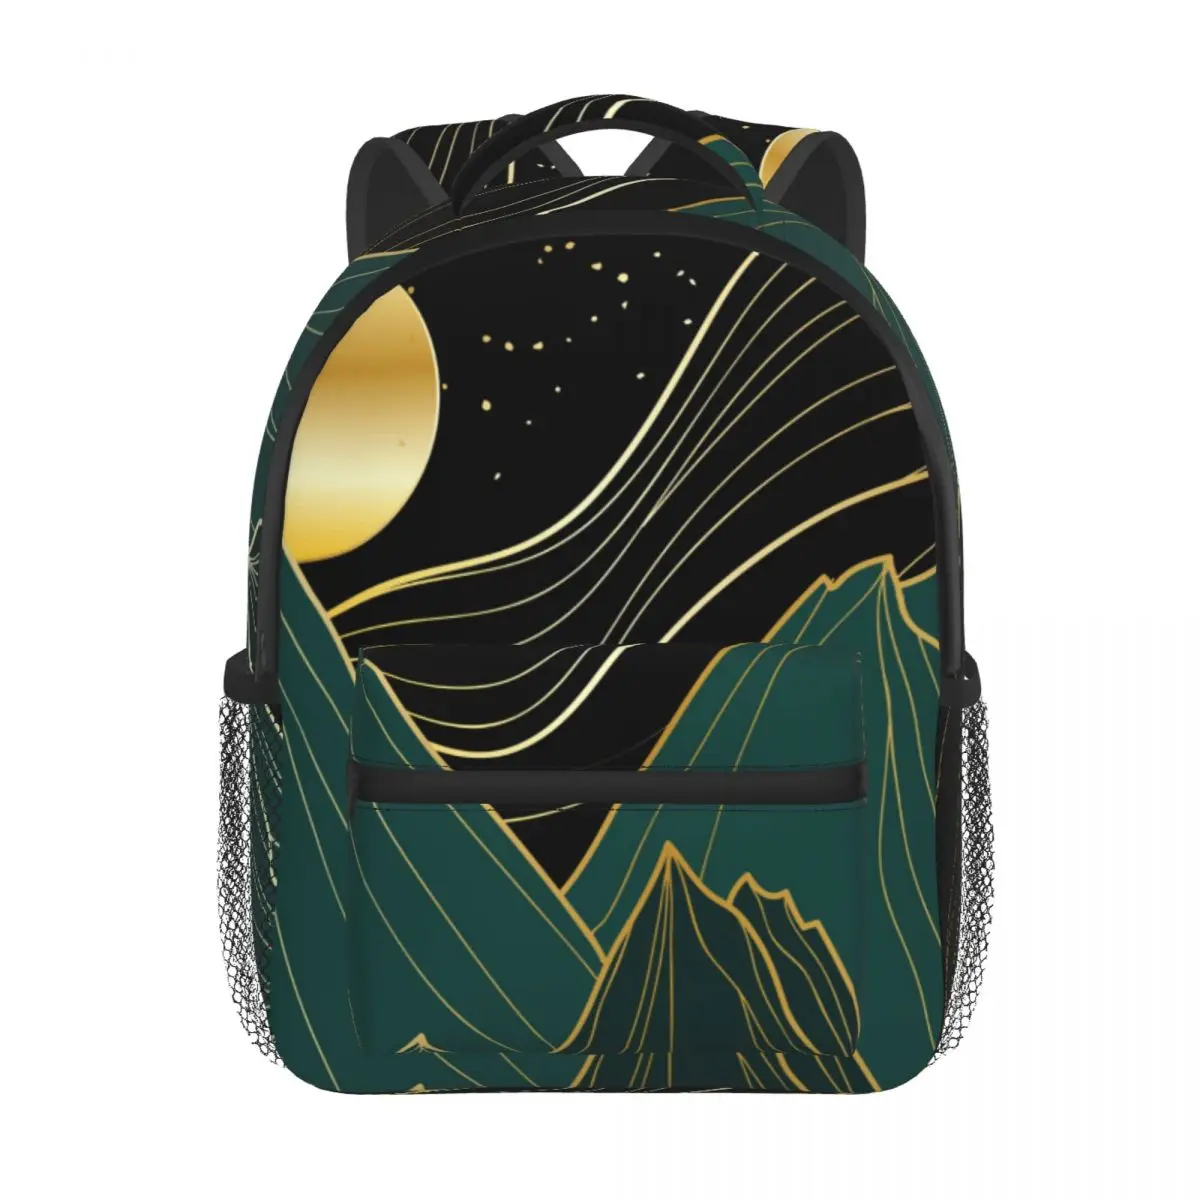 Golden Linear With Mountains Moon Baby Backpack Kindergarten Schoolbag Kids Children School Bag